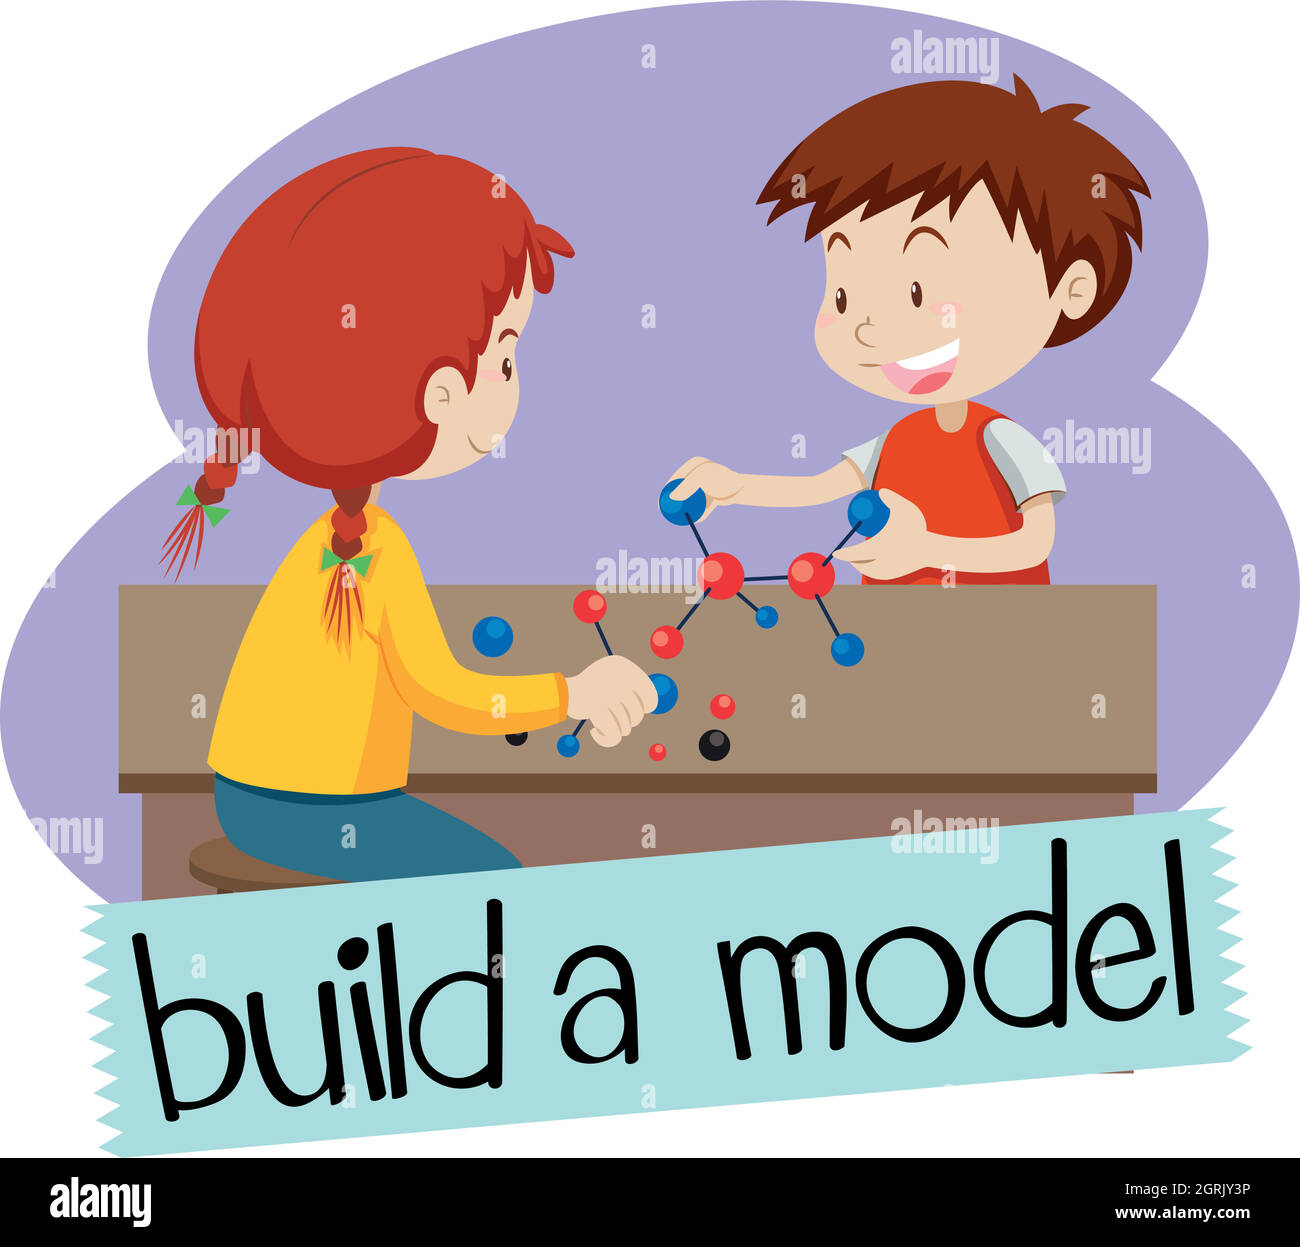 Wordcard pour construire un modèle avec deux étudiants de construire des modèles Illustration de Vecteur